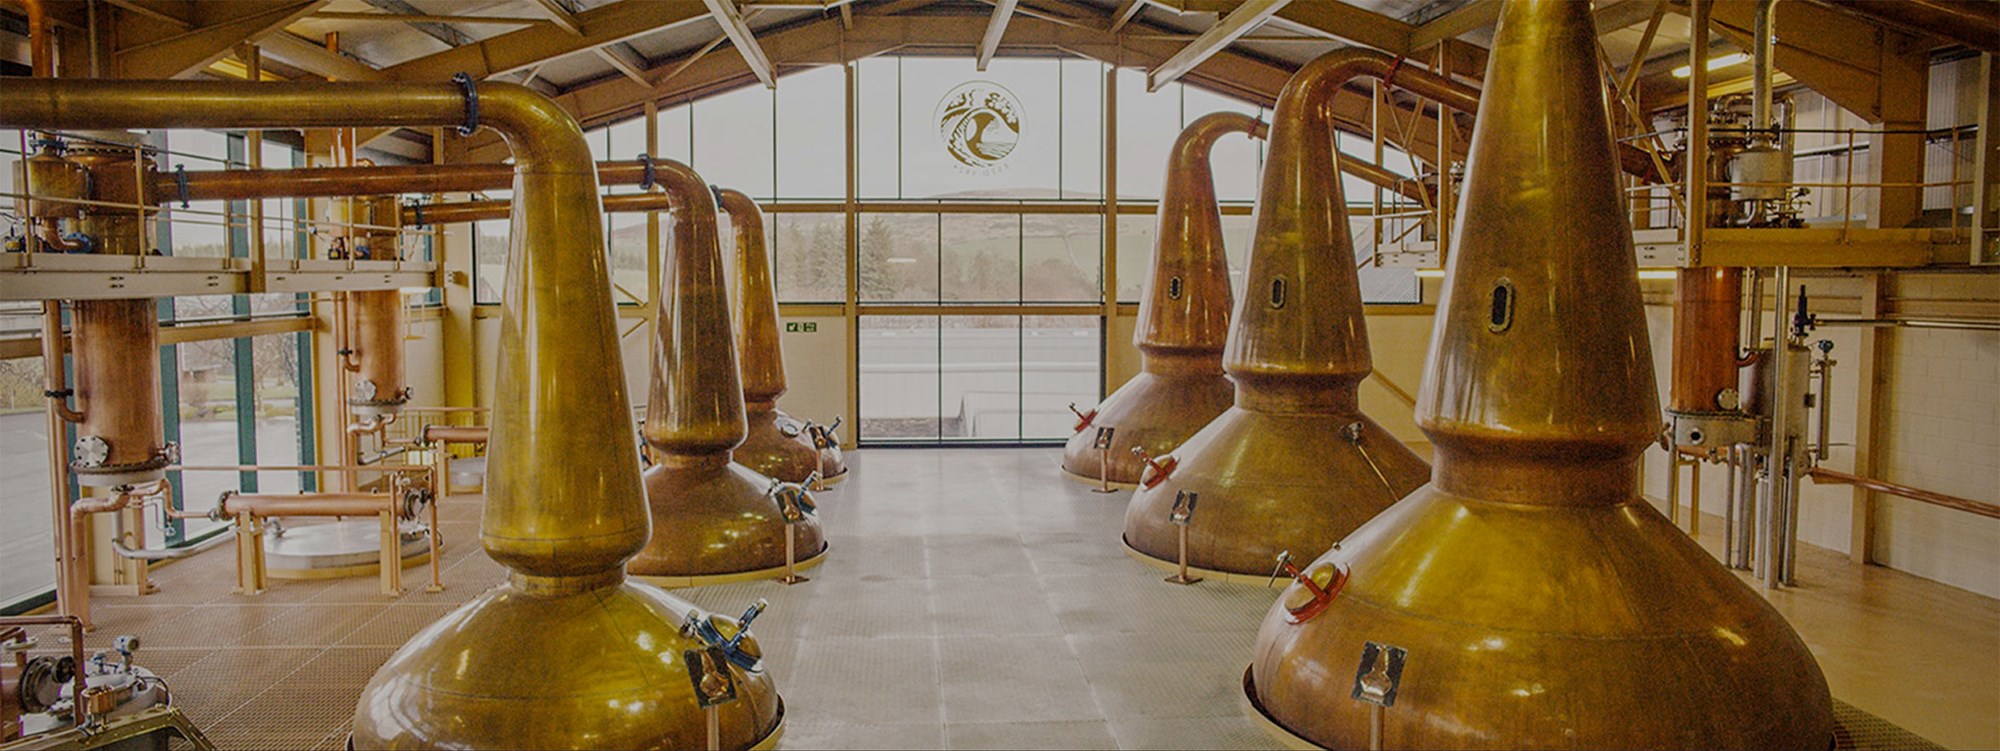 Distillery Glenlivet